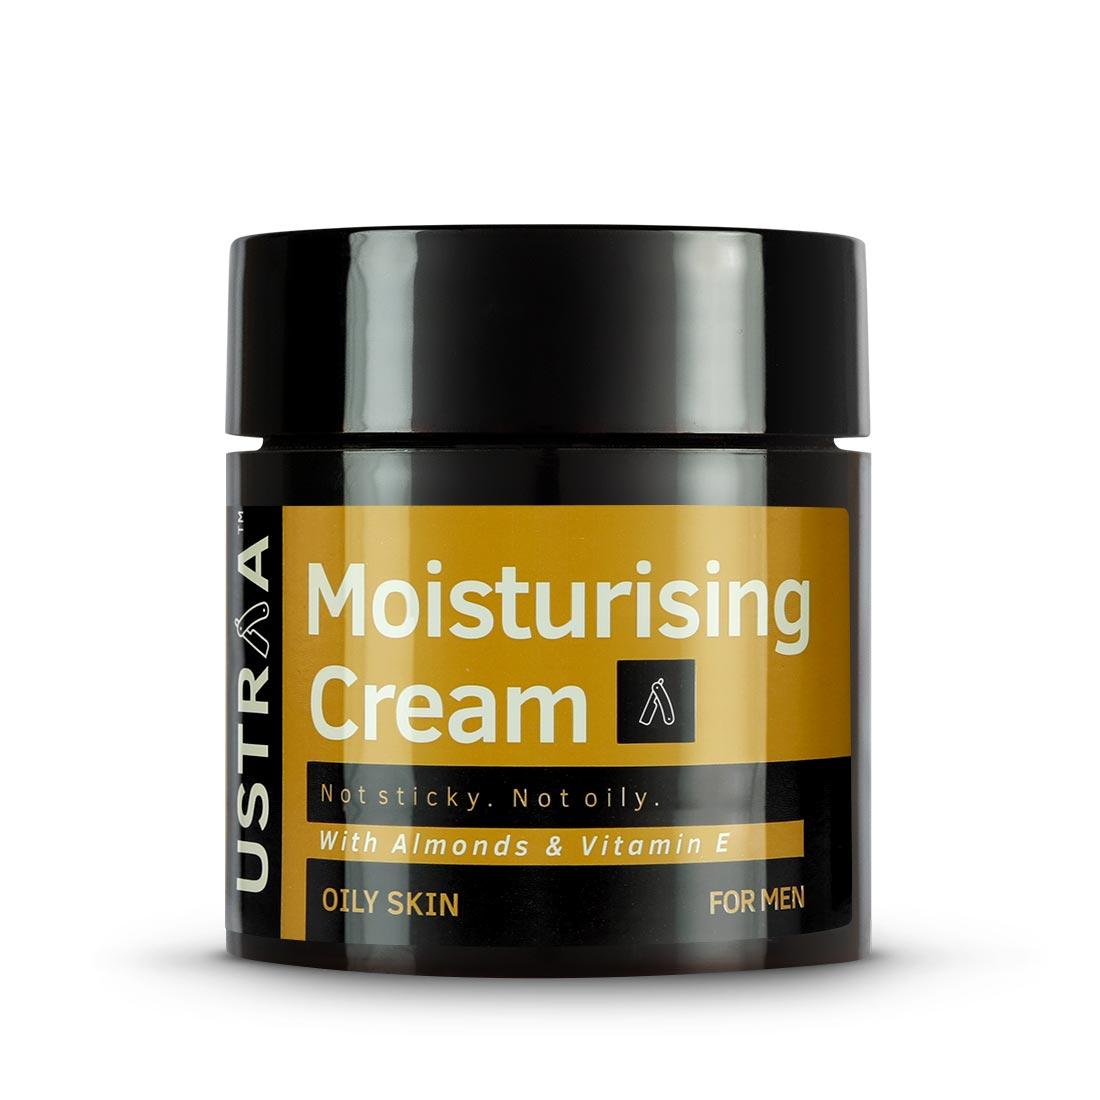 Moisturising Cream For Oily Skin – 100g